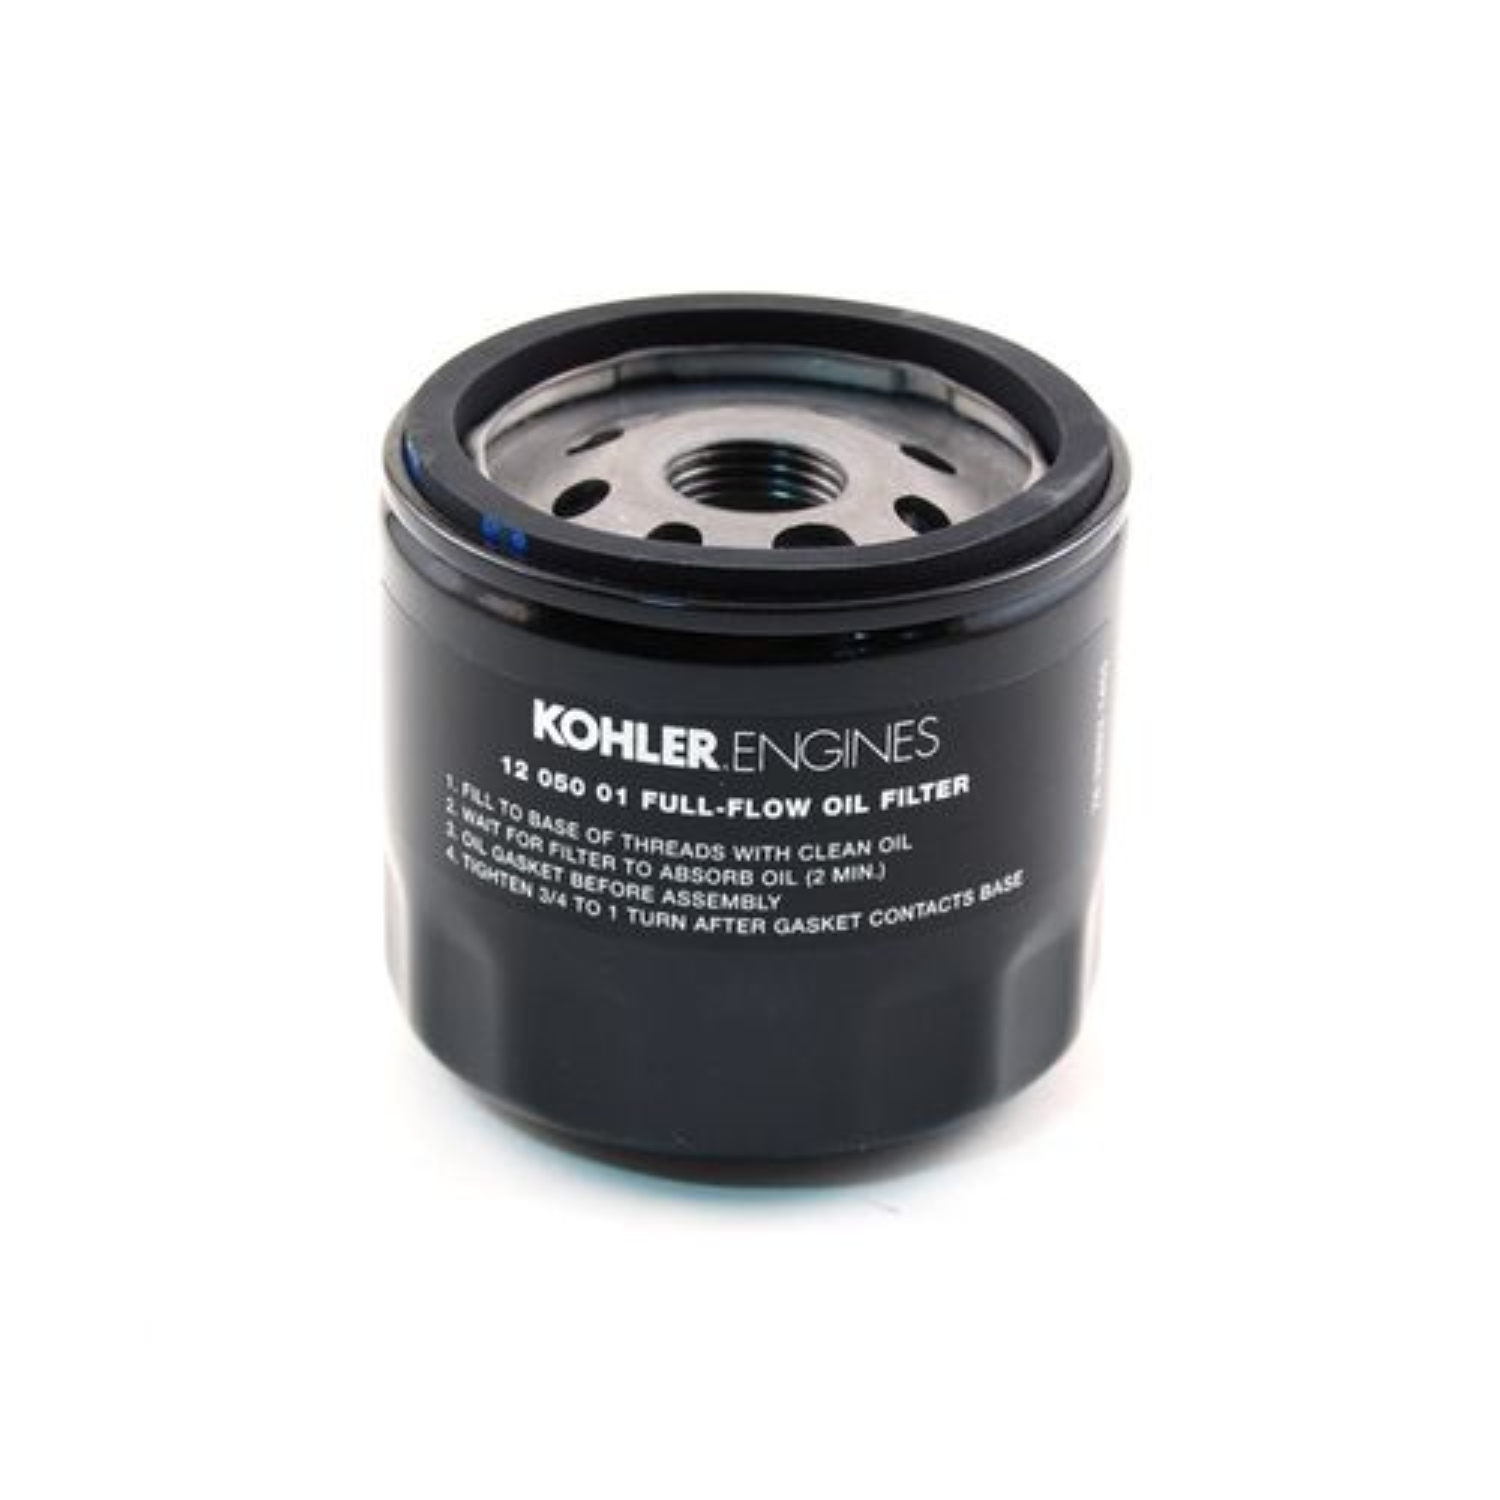 Kohler Oil Filter | 12 050 01-S - Main Street Mower | Winter Garden, Ocala, Clermont